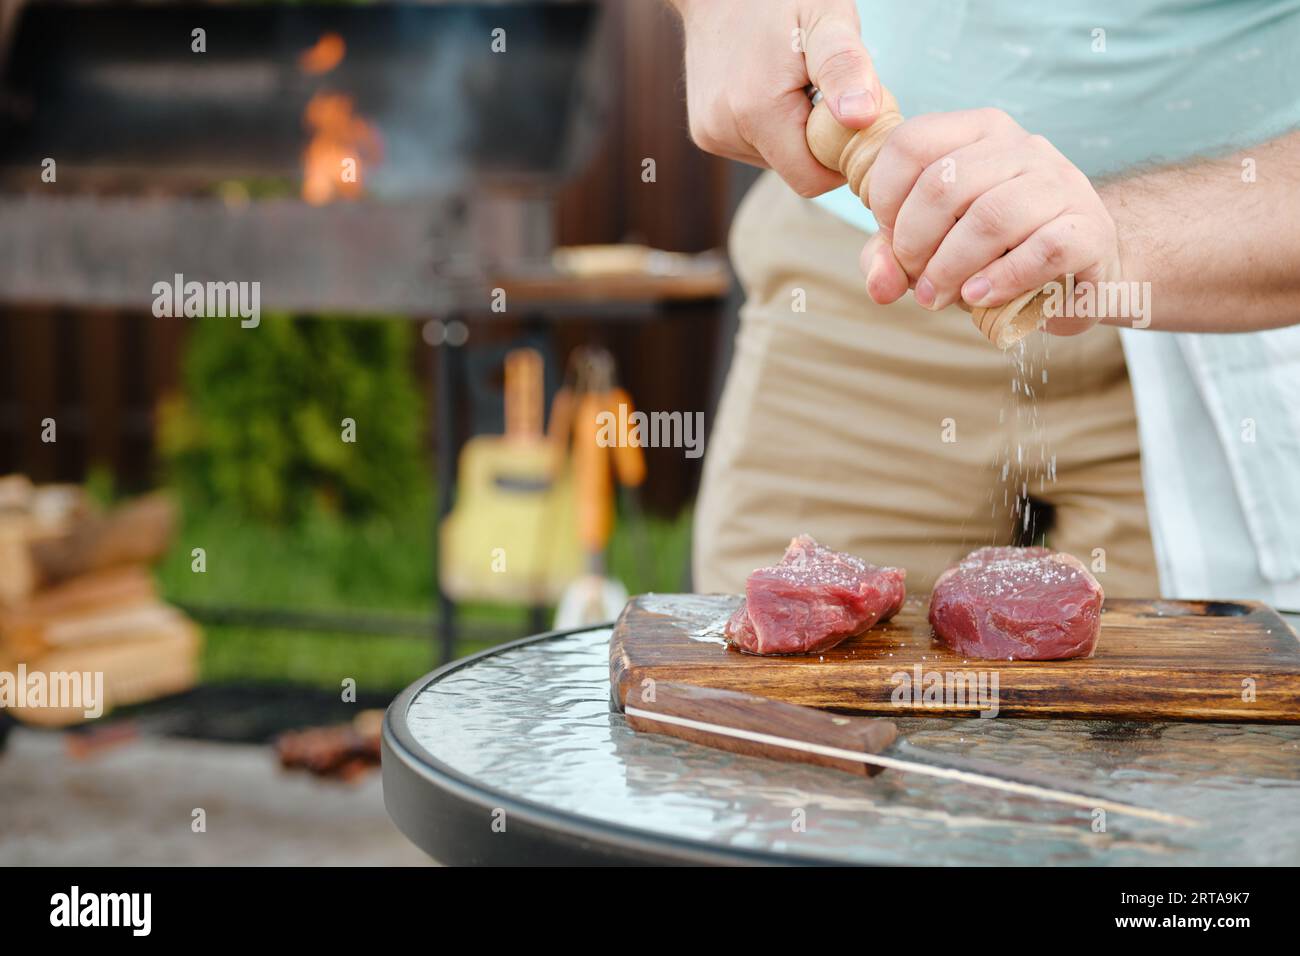 Uomo non riconoscibile che usa il mulino a mano per condire bistecca cruda con sale (foto con profondità di campo bassa) Foto Stock